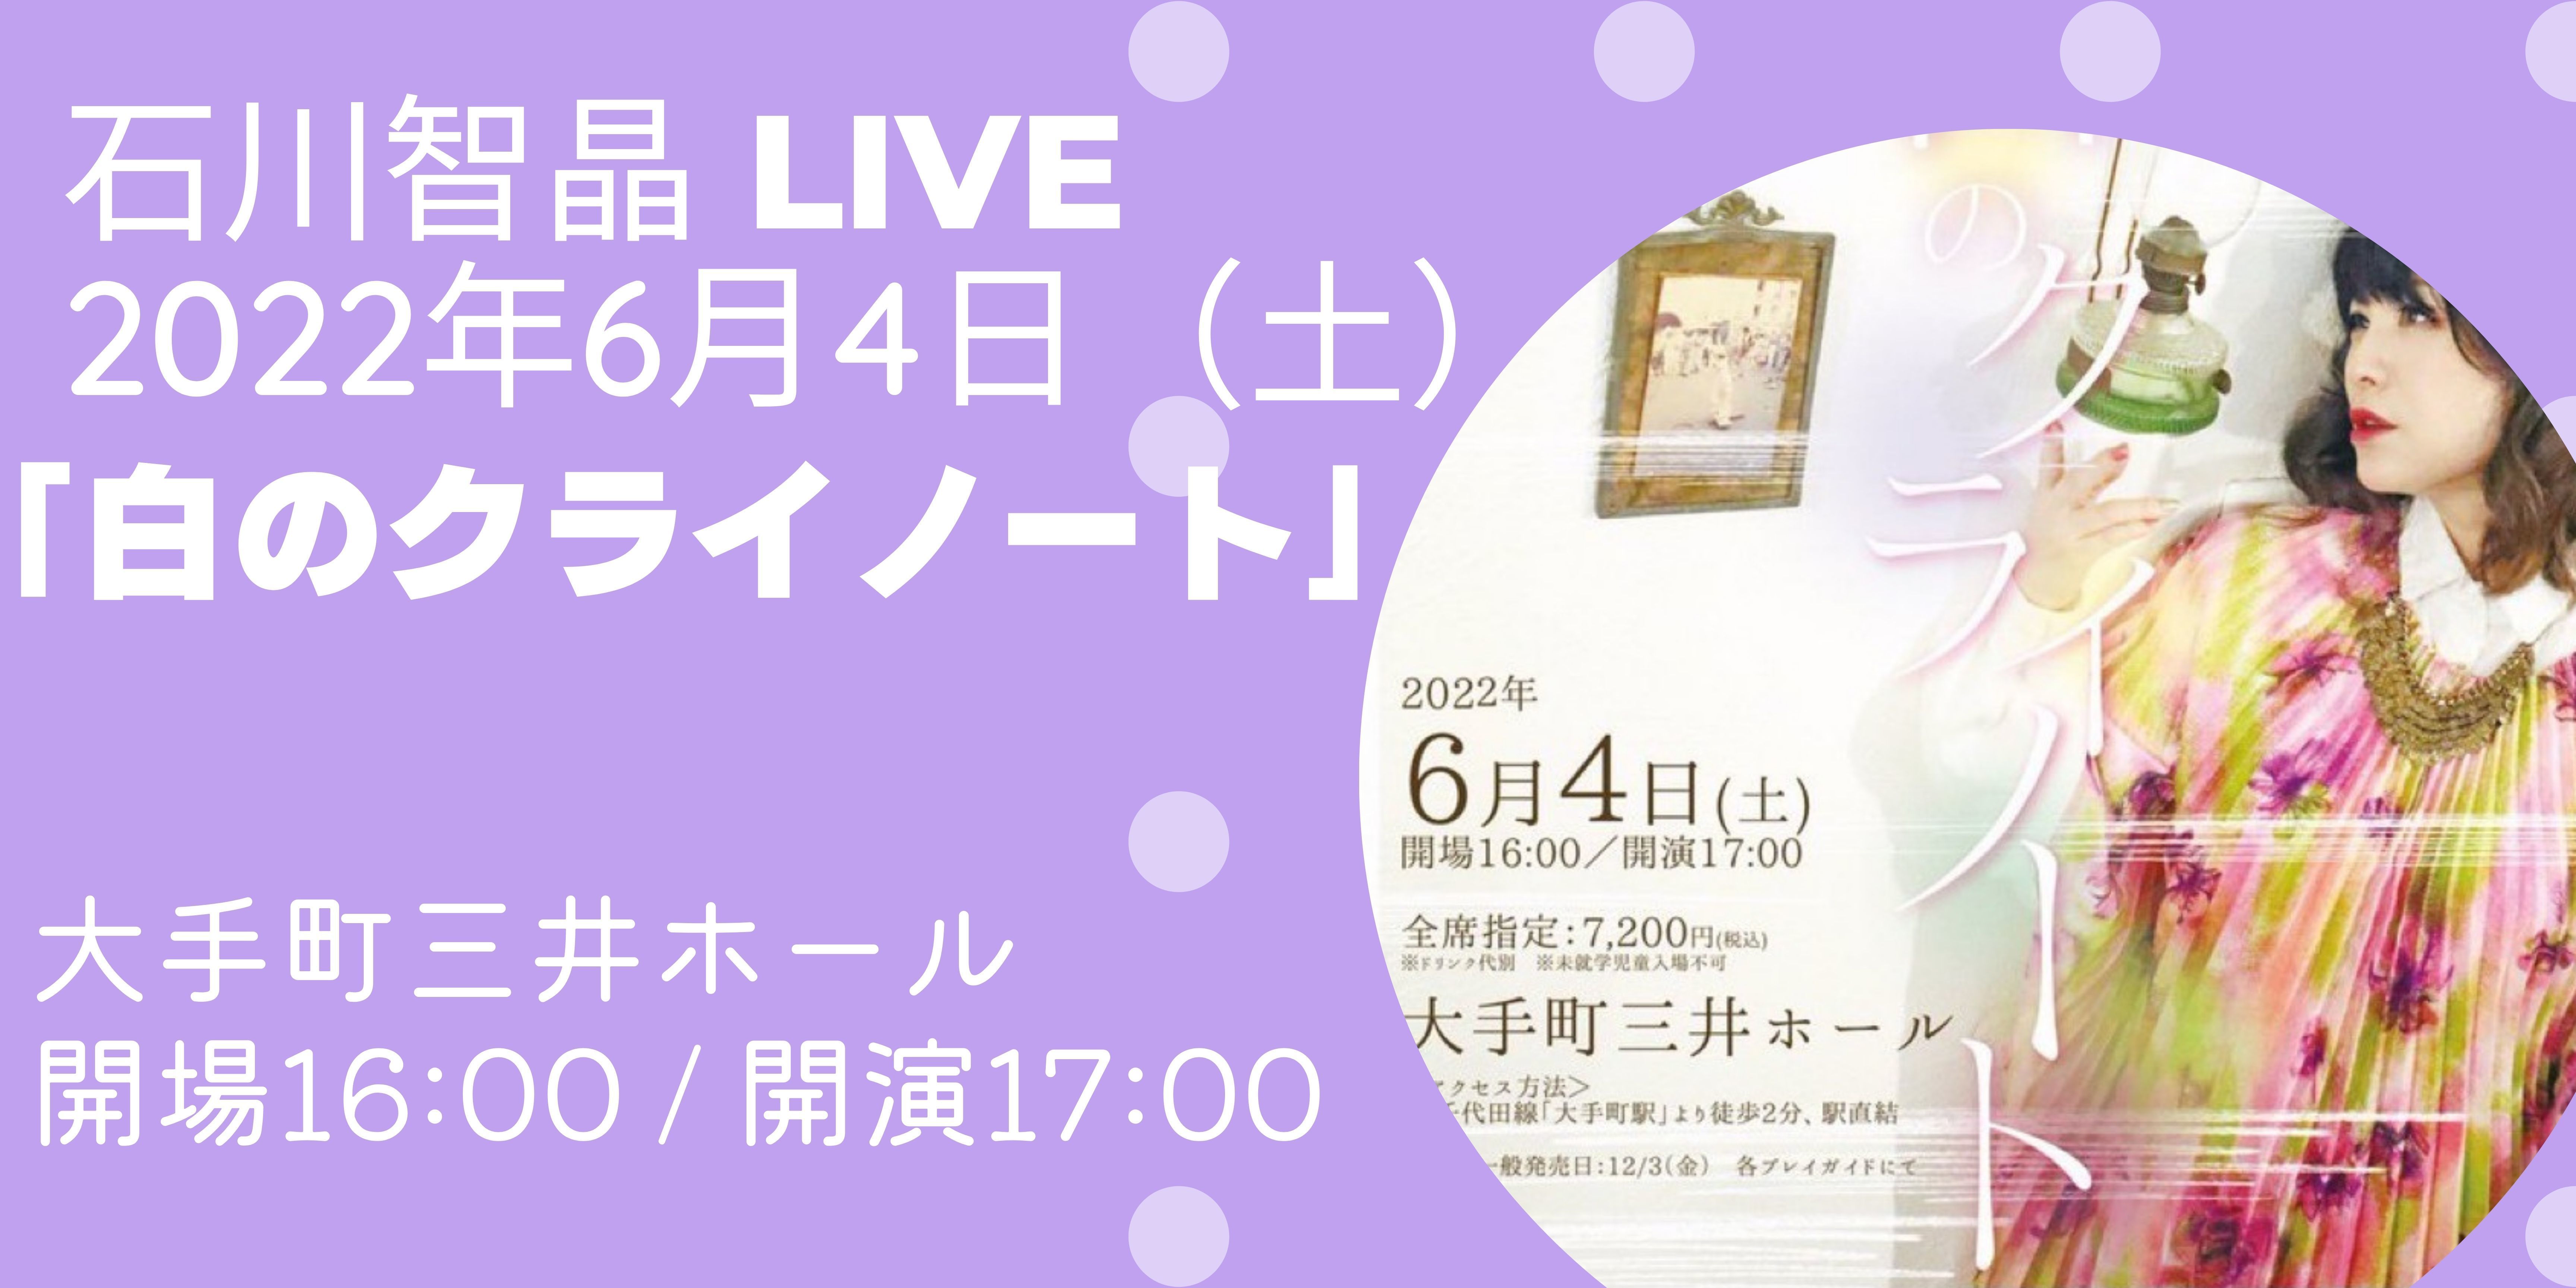 2022年4月6日（土）石川智晶 LIVE「白のクライノート」